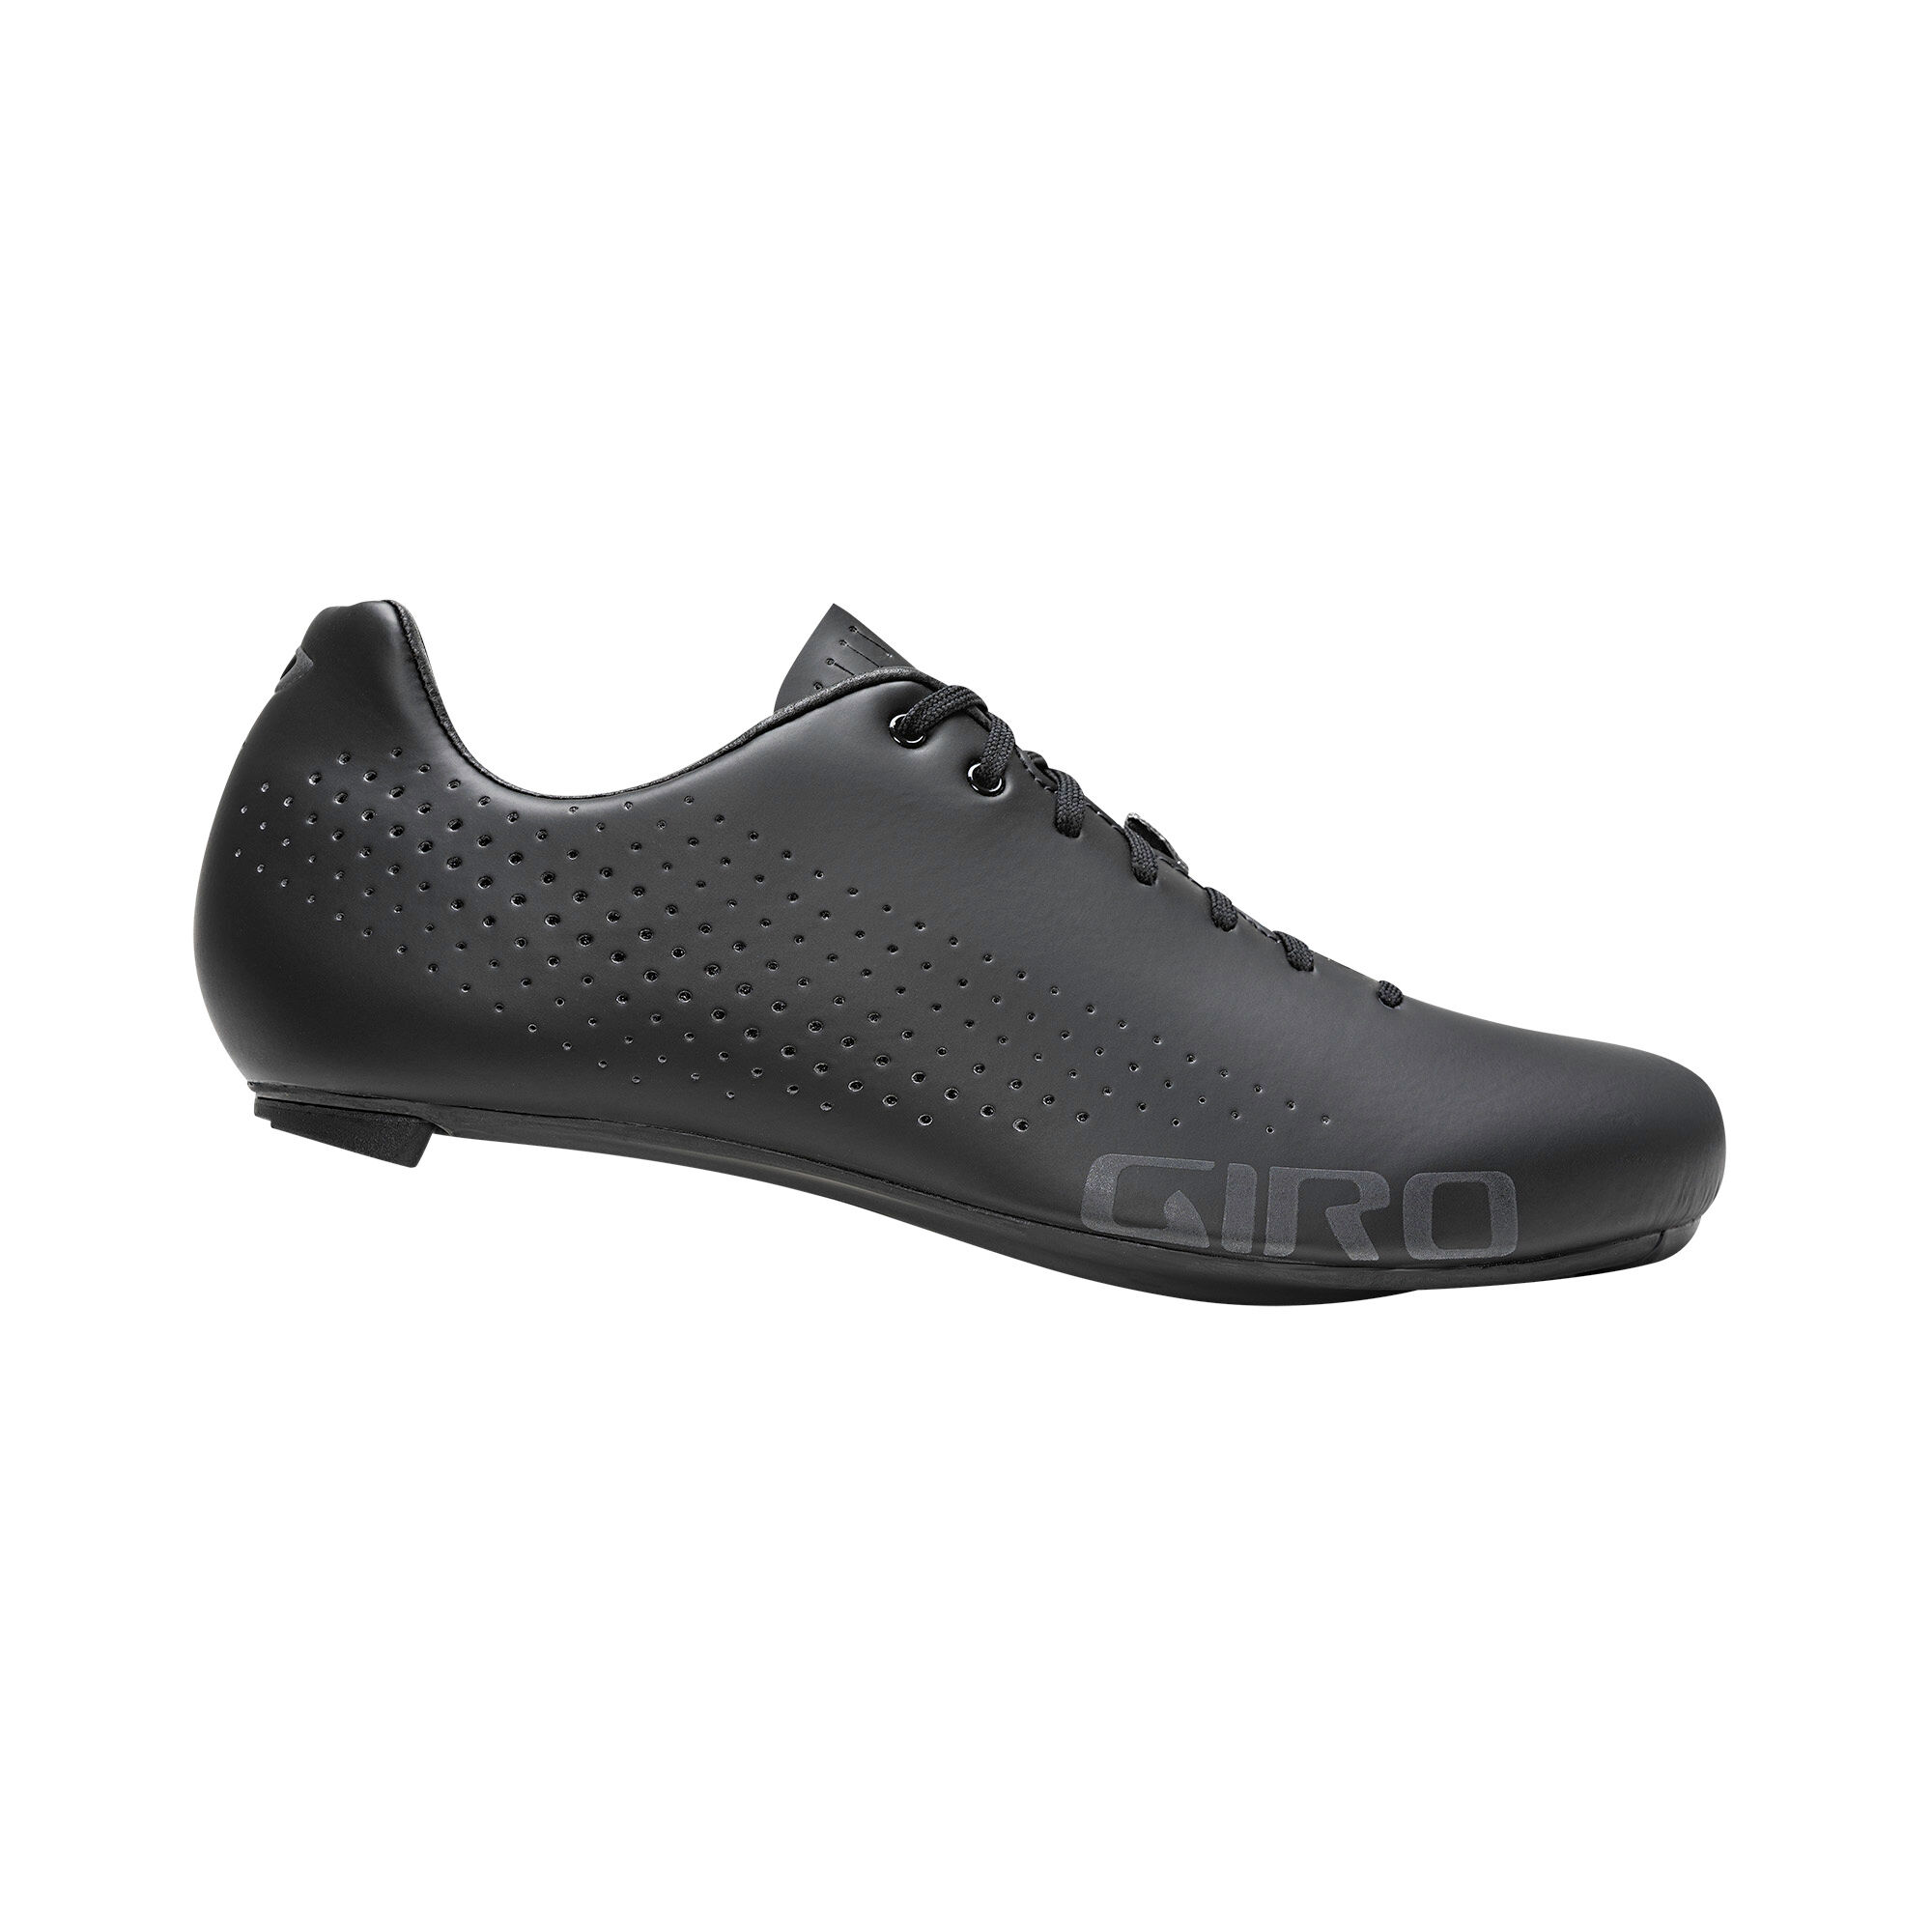 Giro Empire - Cycling shoes - Men's